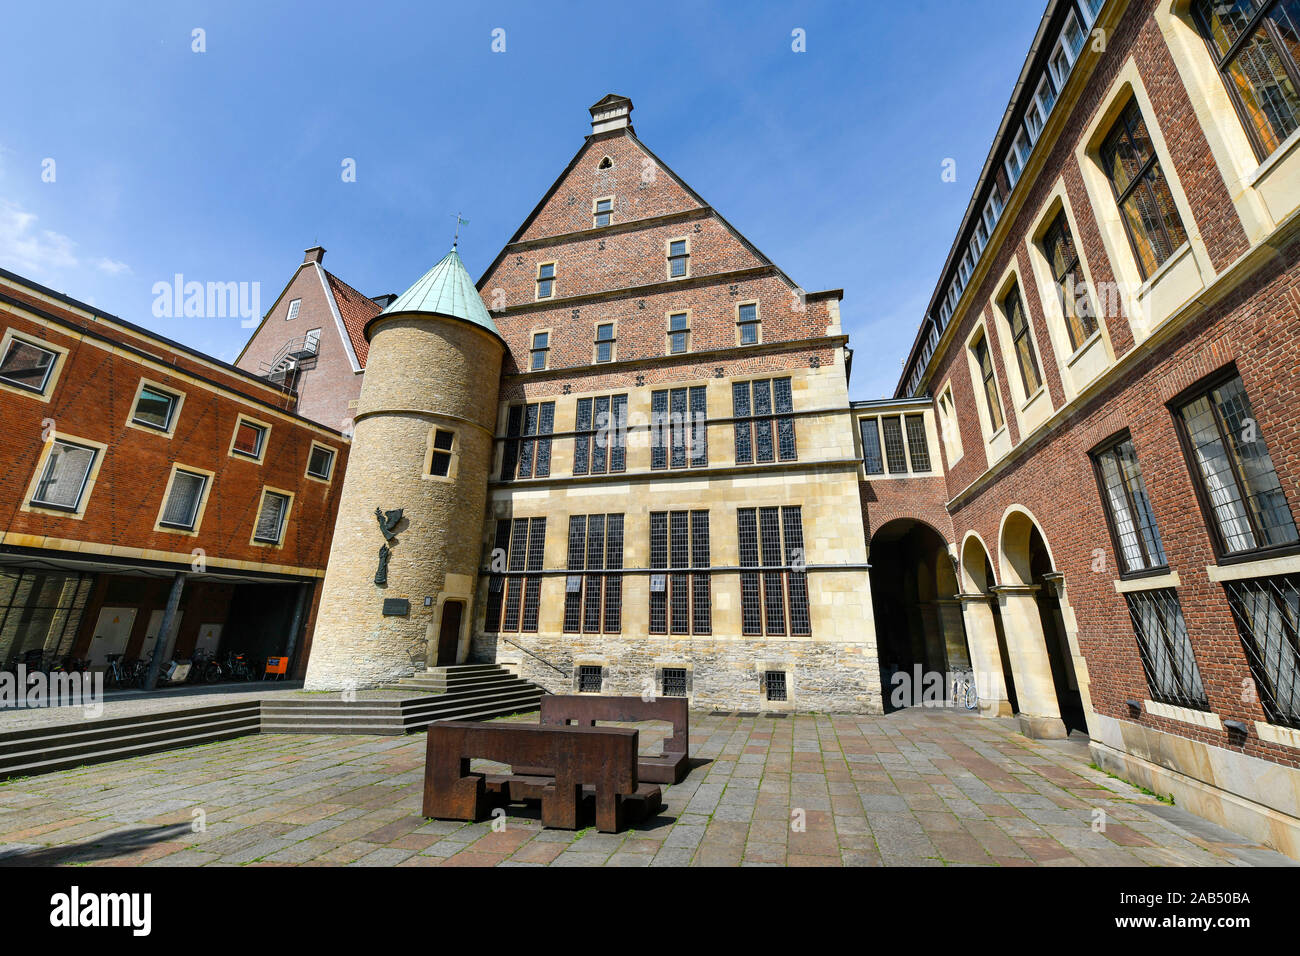 Rückansicht, Hinterhof, Historisches Rathaus, Platz des Westfälischen Friedens, Münster, Nordrhein-Westfalen, Deutschland Stock Photo